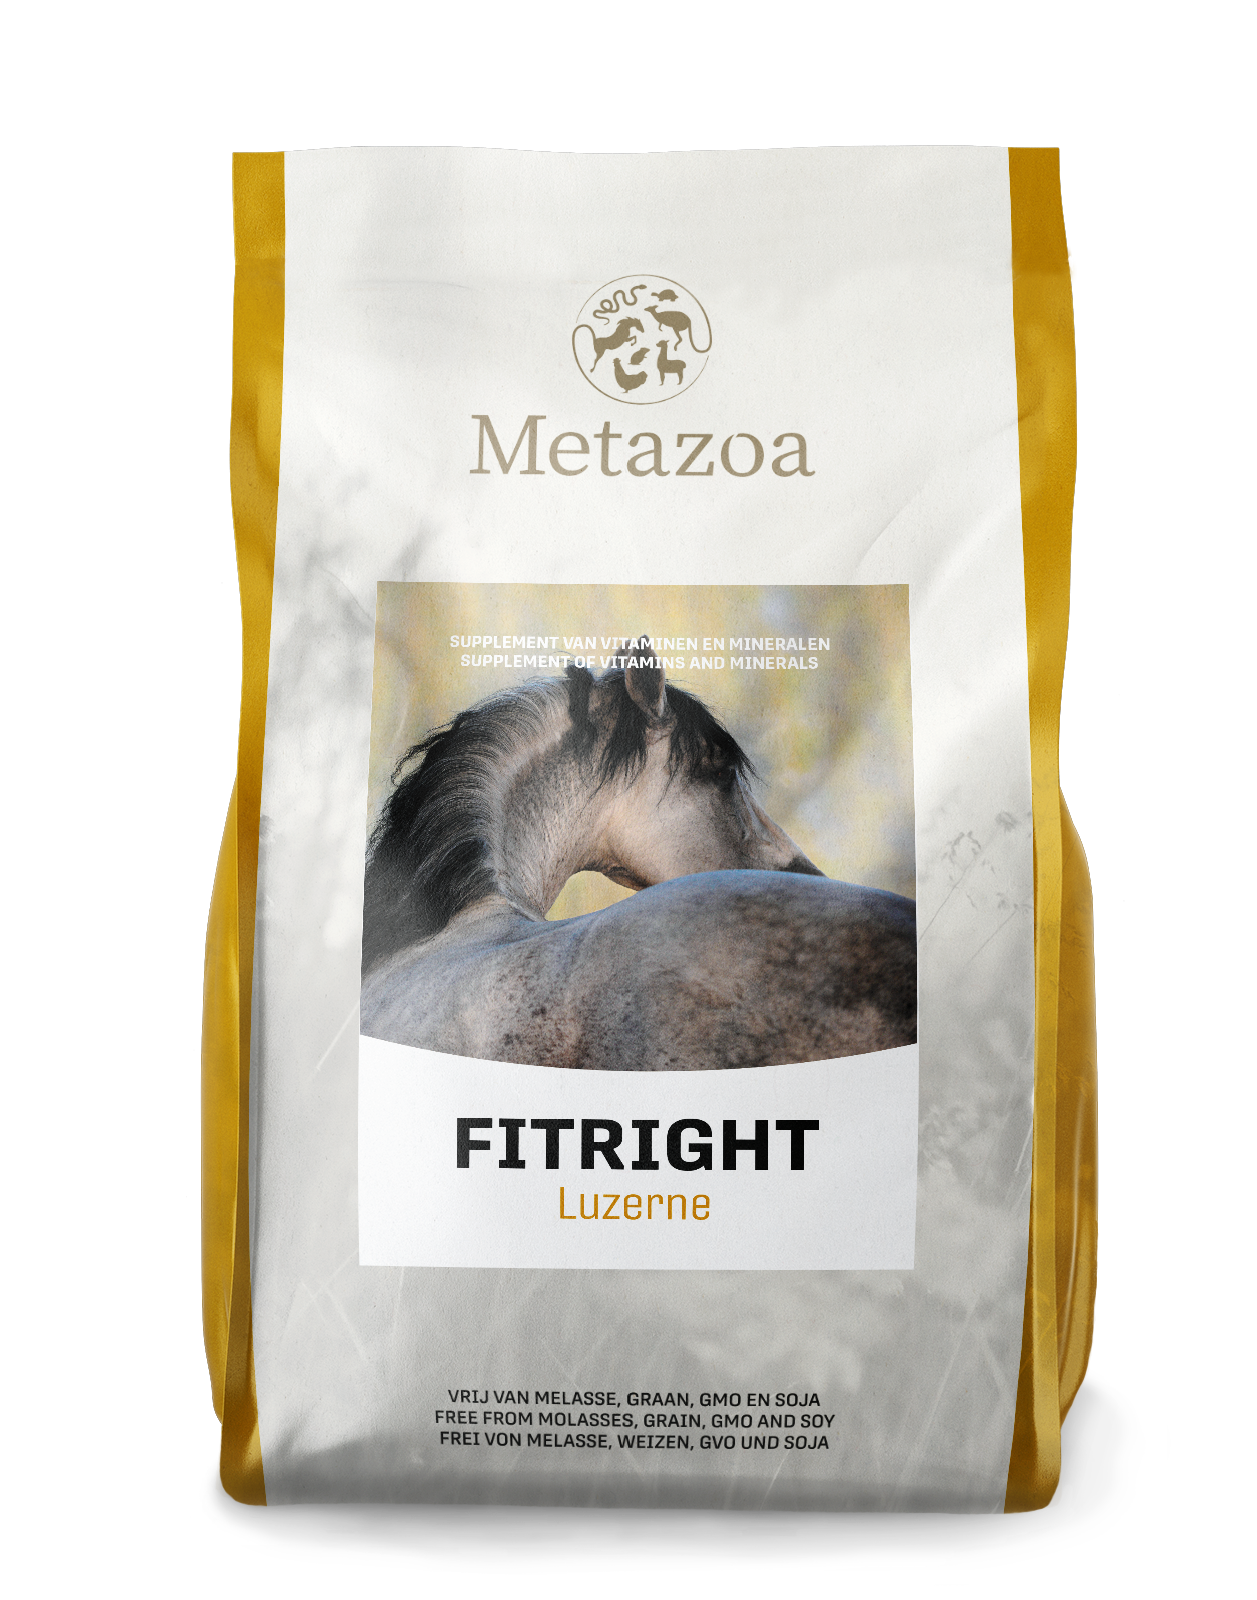 Download Metazoa FitRight luzerne verpakking 15 kg EAN 4260176354994